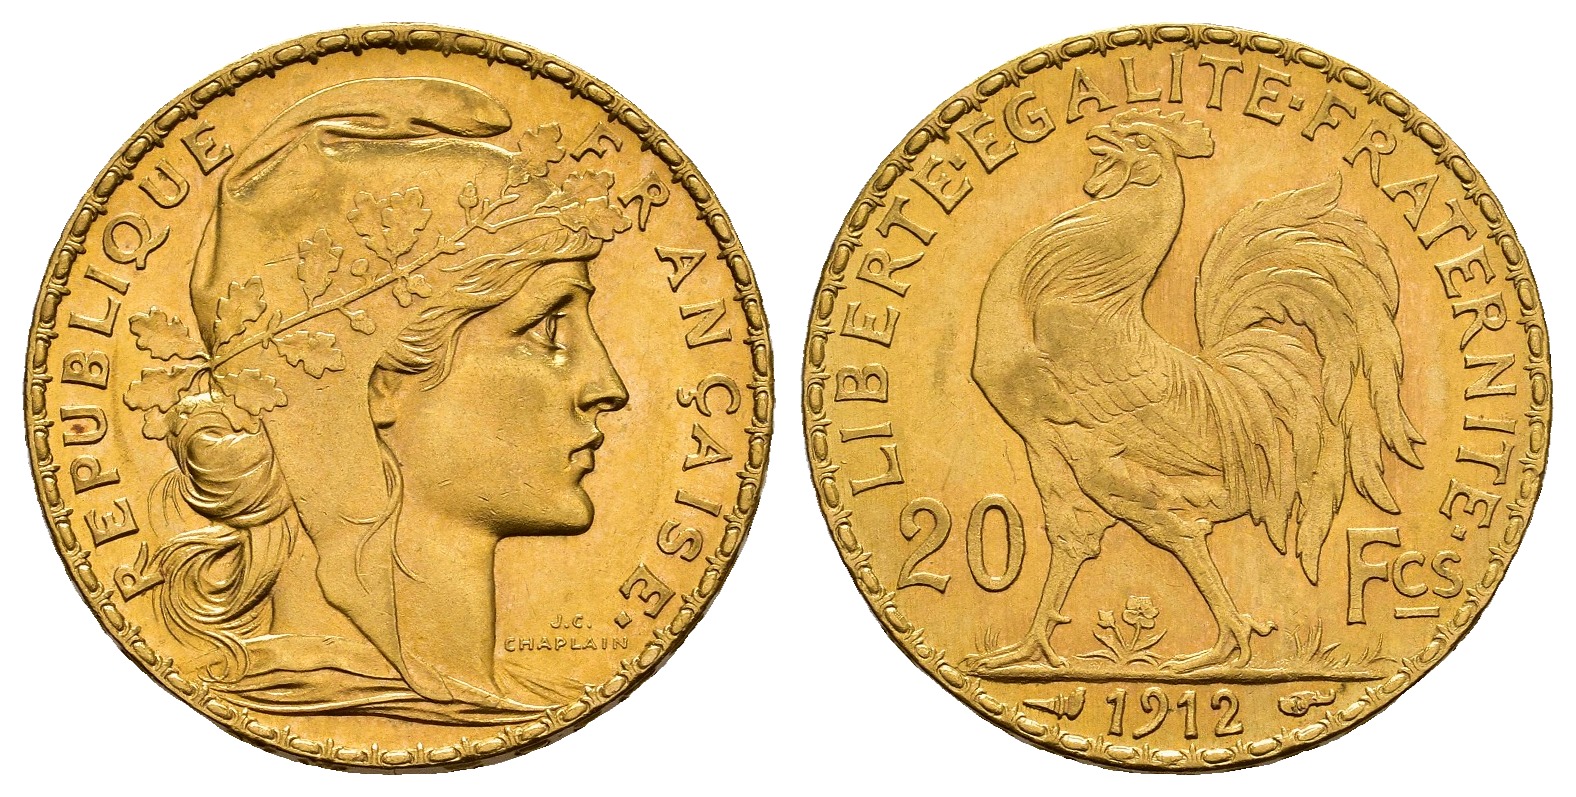 PEUS 8460 Frankreich 5,81 g Feingold. Marianne / Galischer Hahn 20 Francs GOLD 1912 Kl. Kratzer, fast Vorzüglich